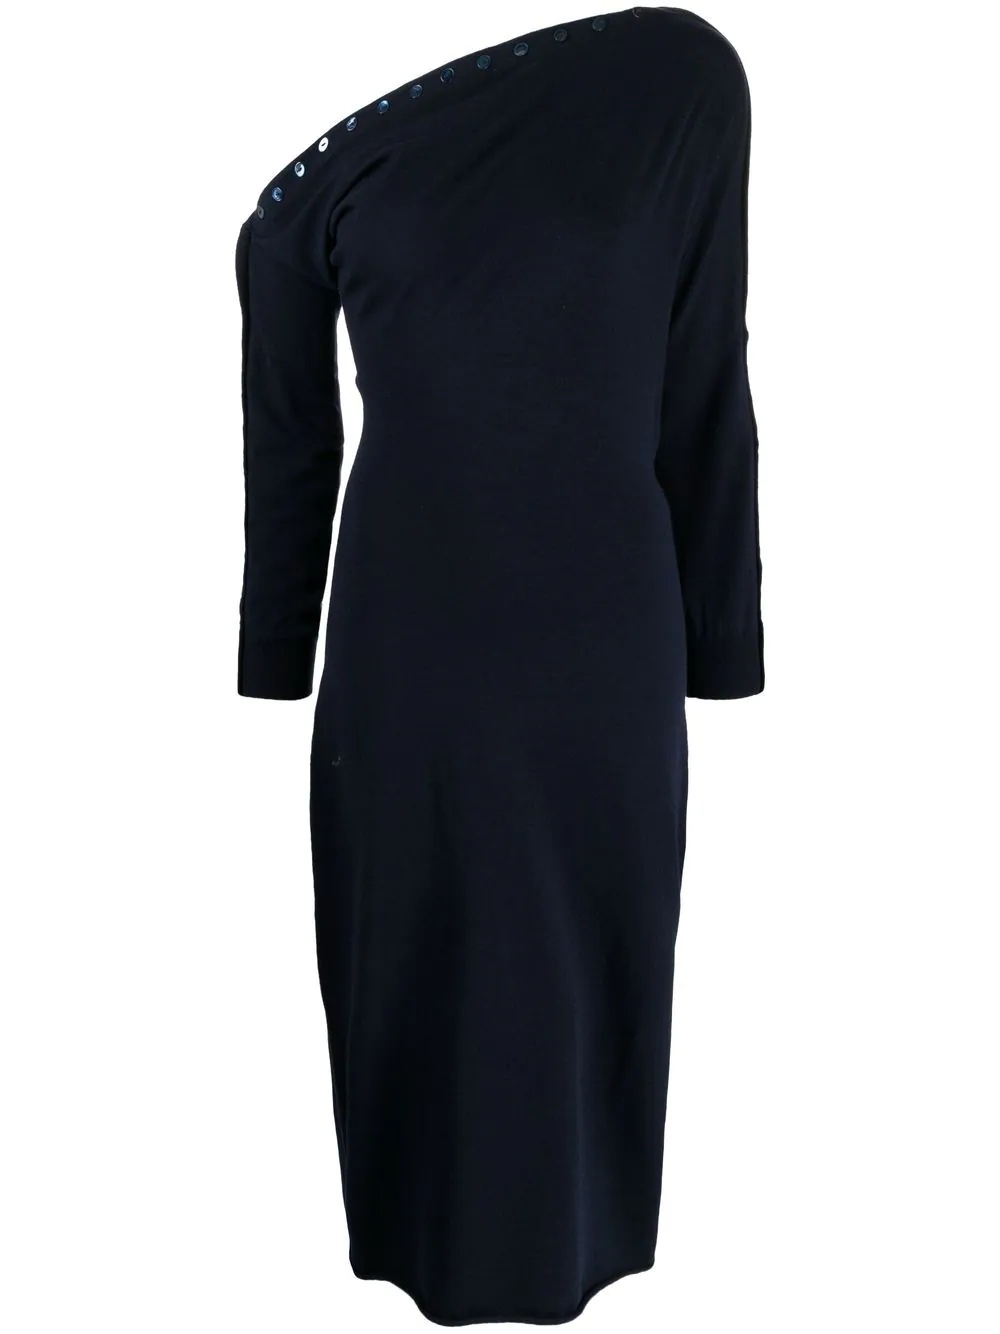 sequin-embellished cold-shoulder dress - 1